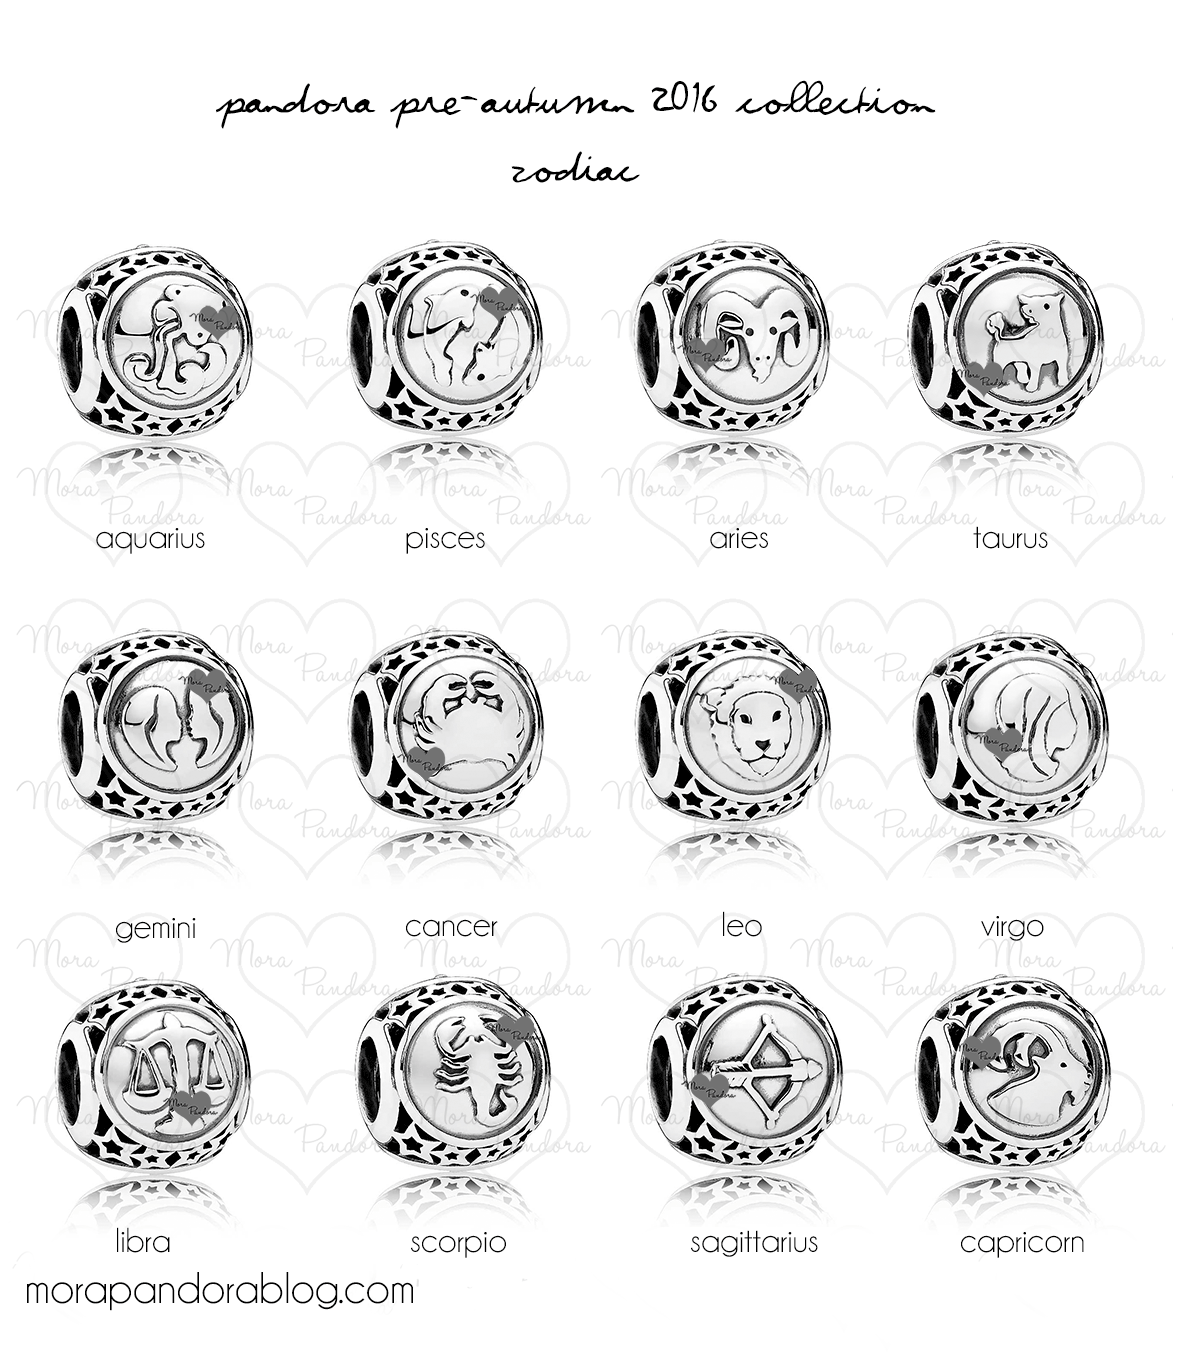 pandora pre-autumn 2016 zodiac astrological signs